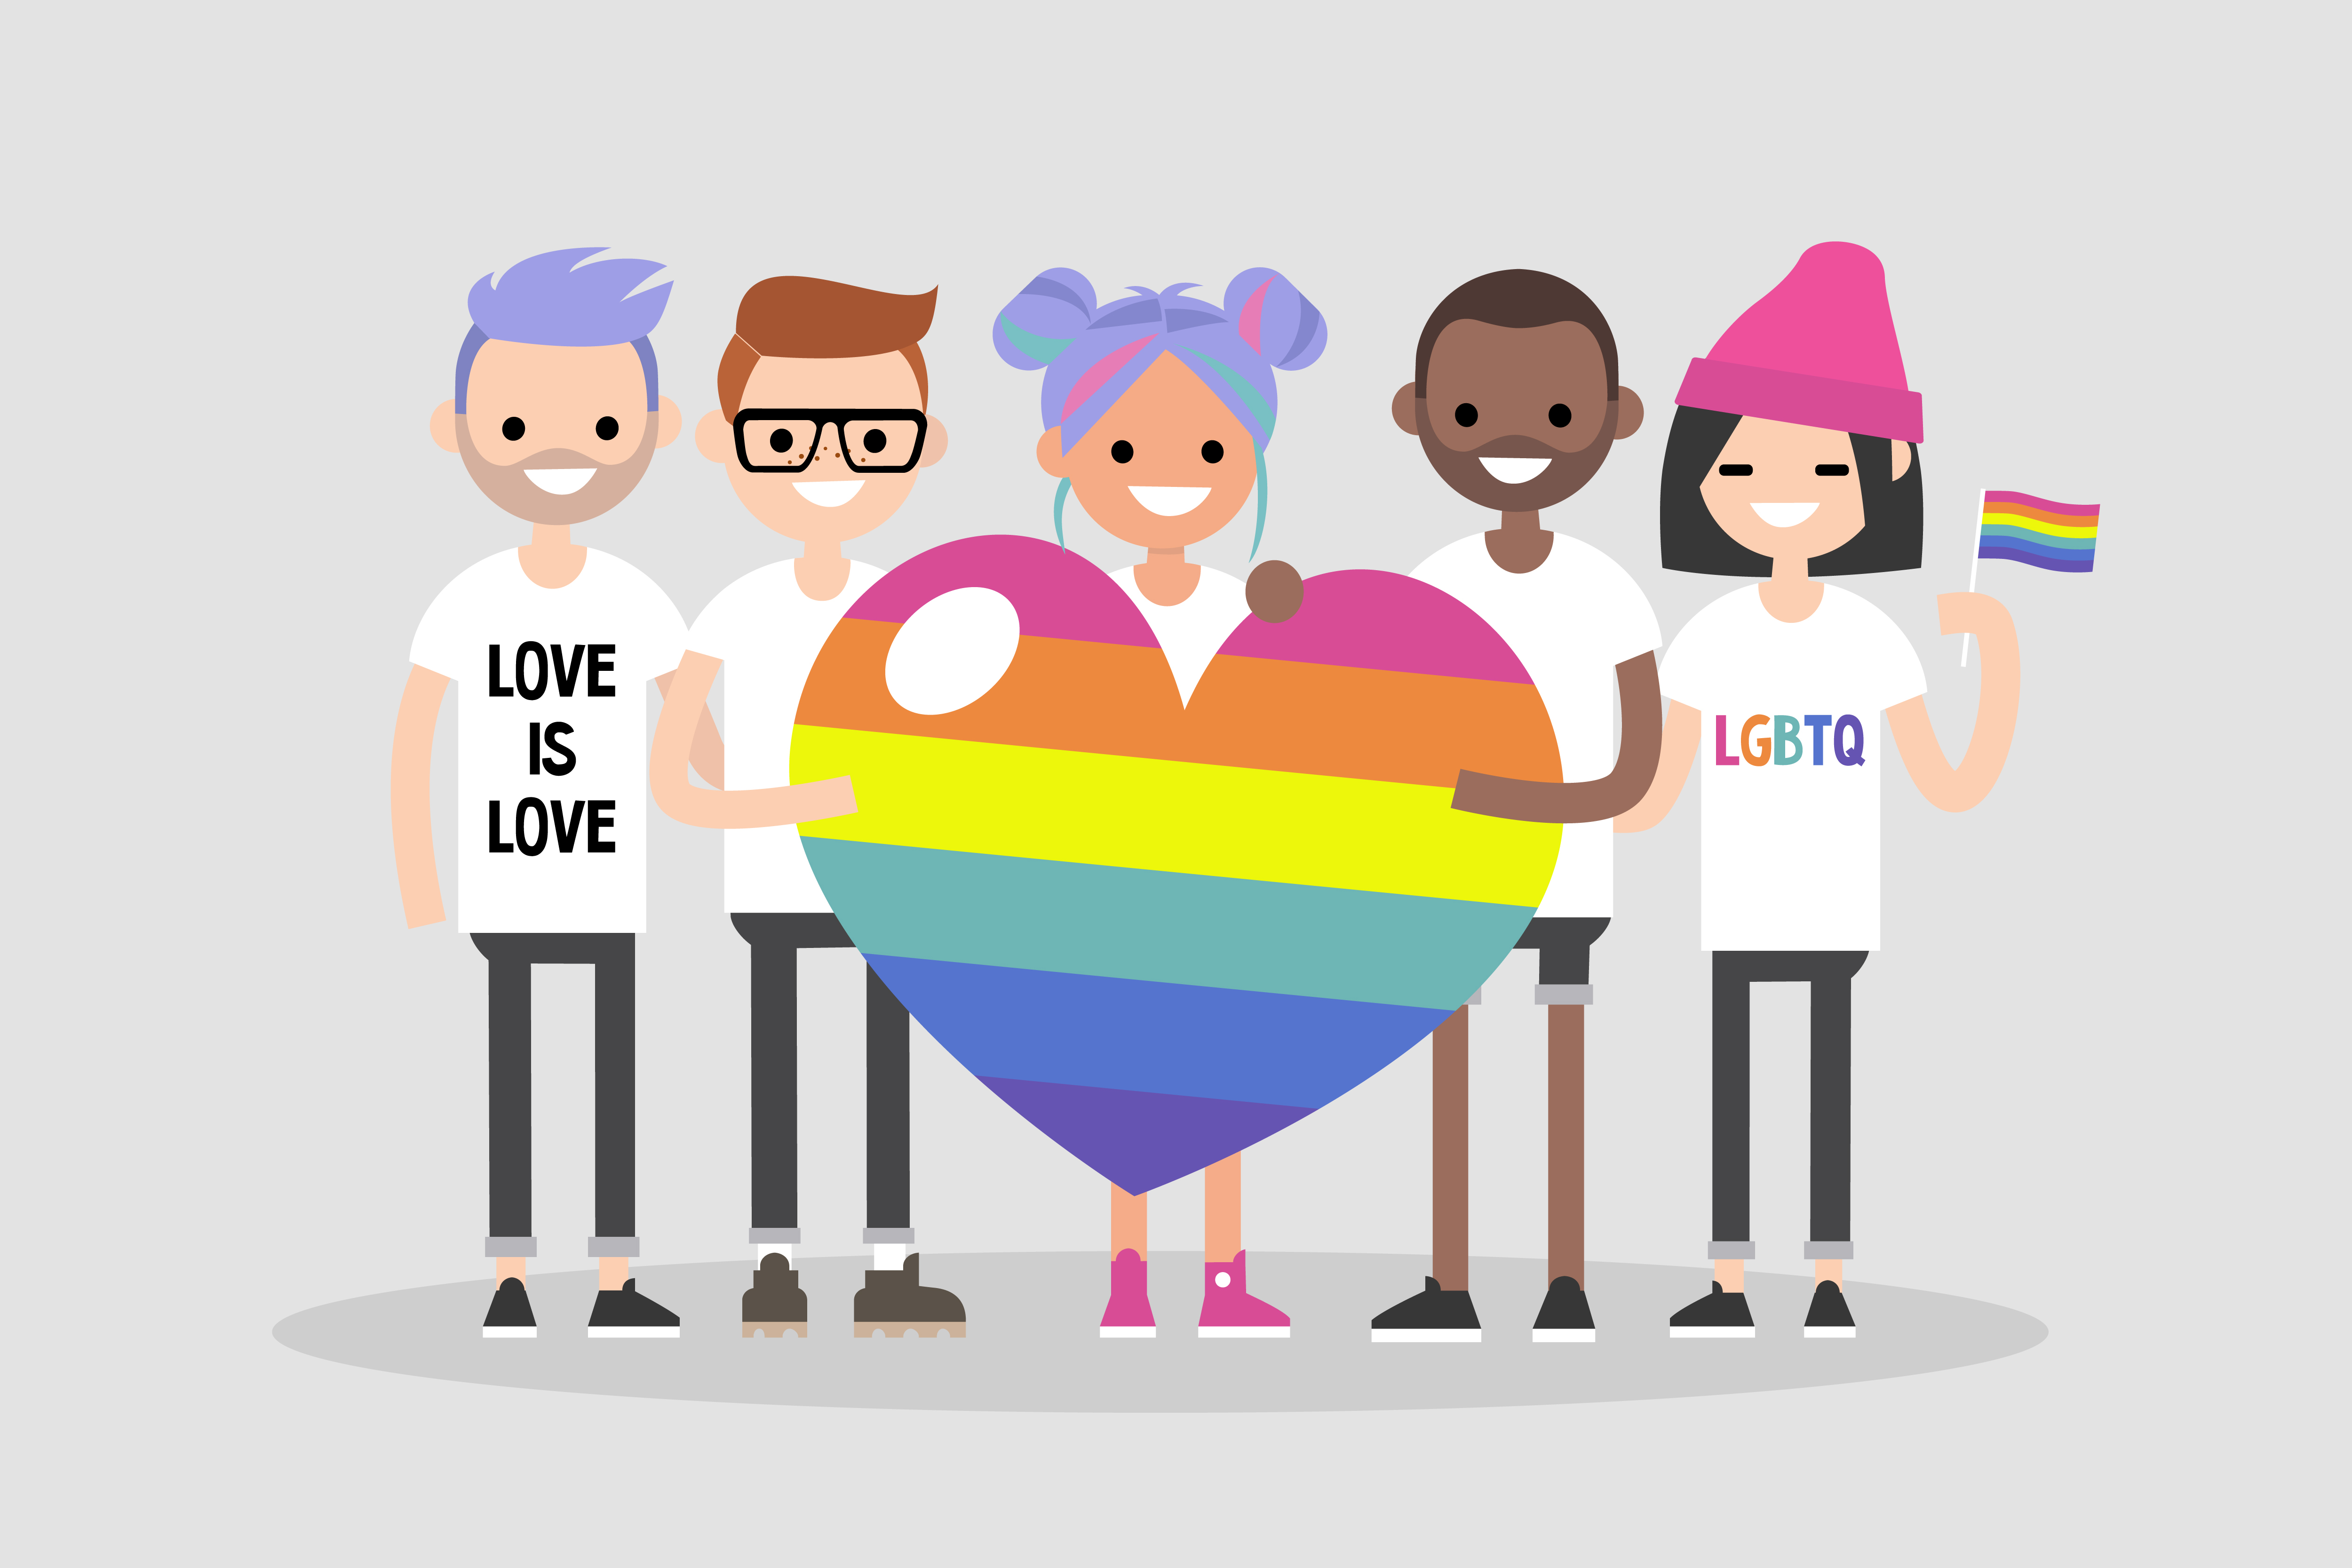 7. Bagaimana Kiprah LGBT di Indonesia? 